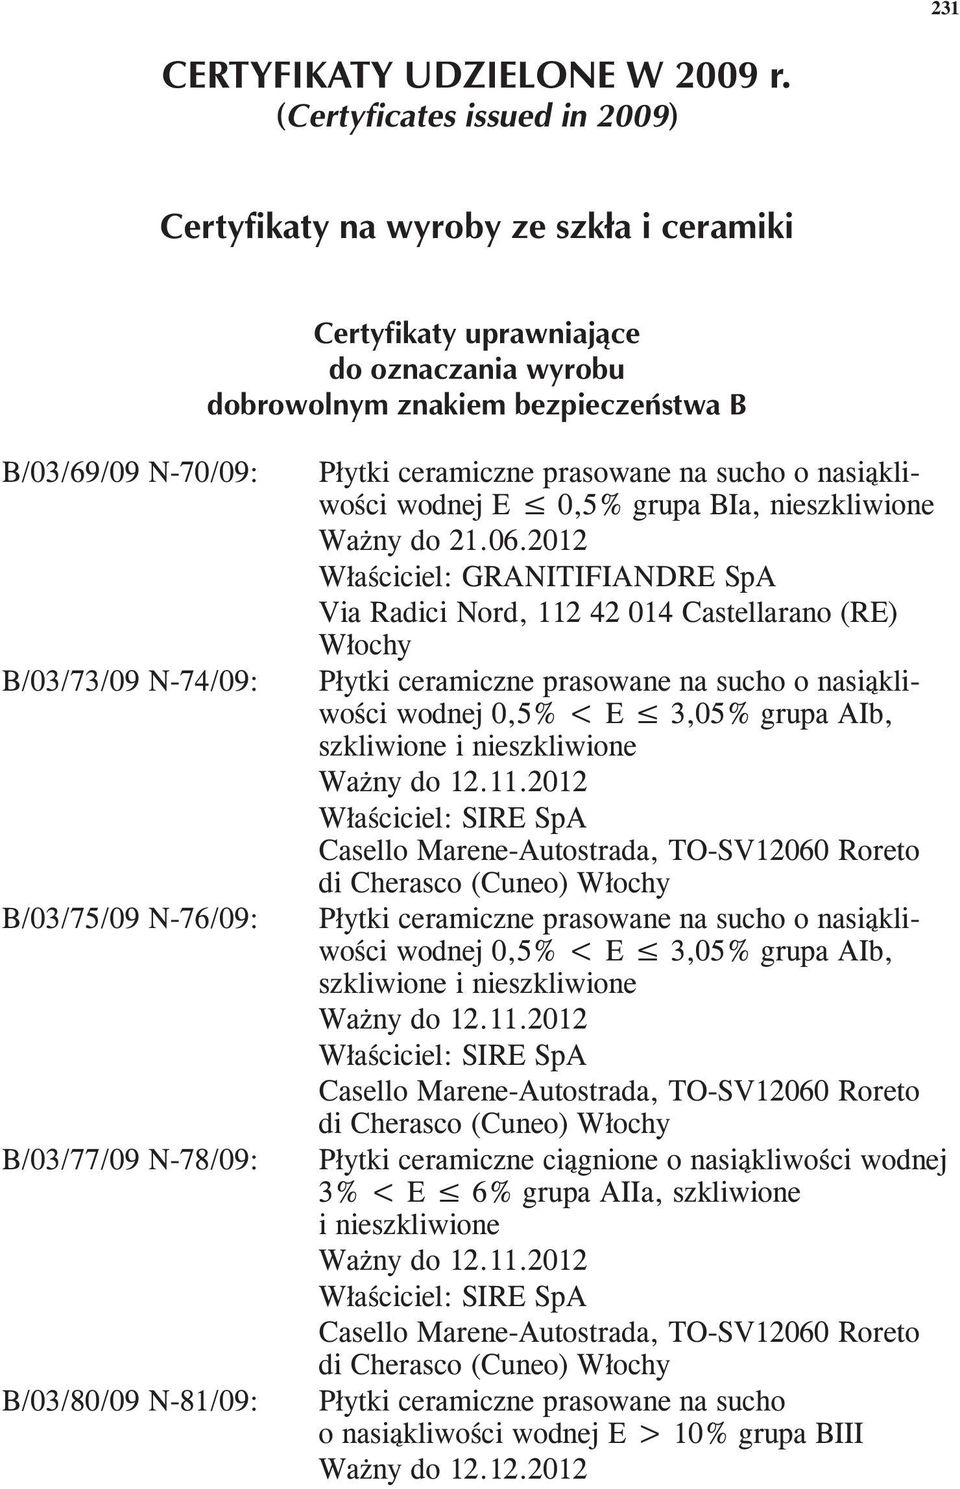 2012 Właściciel: GRANITIFIANDRE SpA Via Radici Nord, 112 42 014 Castellarano (RE) Włochy Płytki ceramiczne prasowane na sucho o nasiąkliwości wodnej 0,5% < E 3,05% grupa AIb, szkliwione i